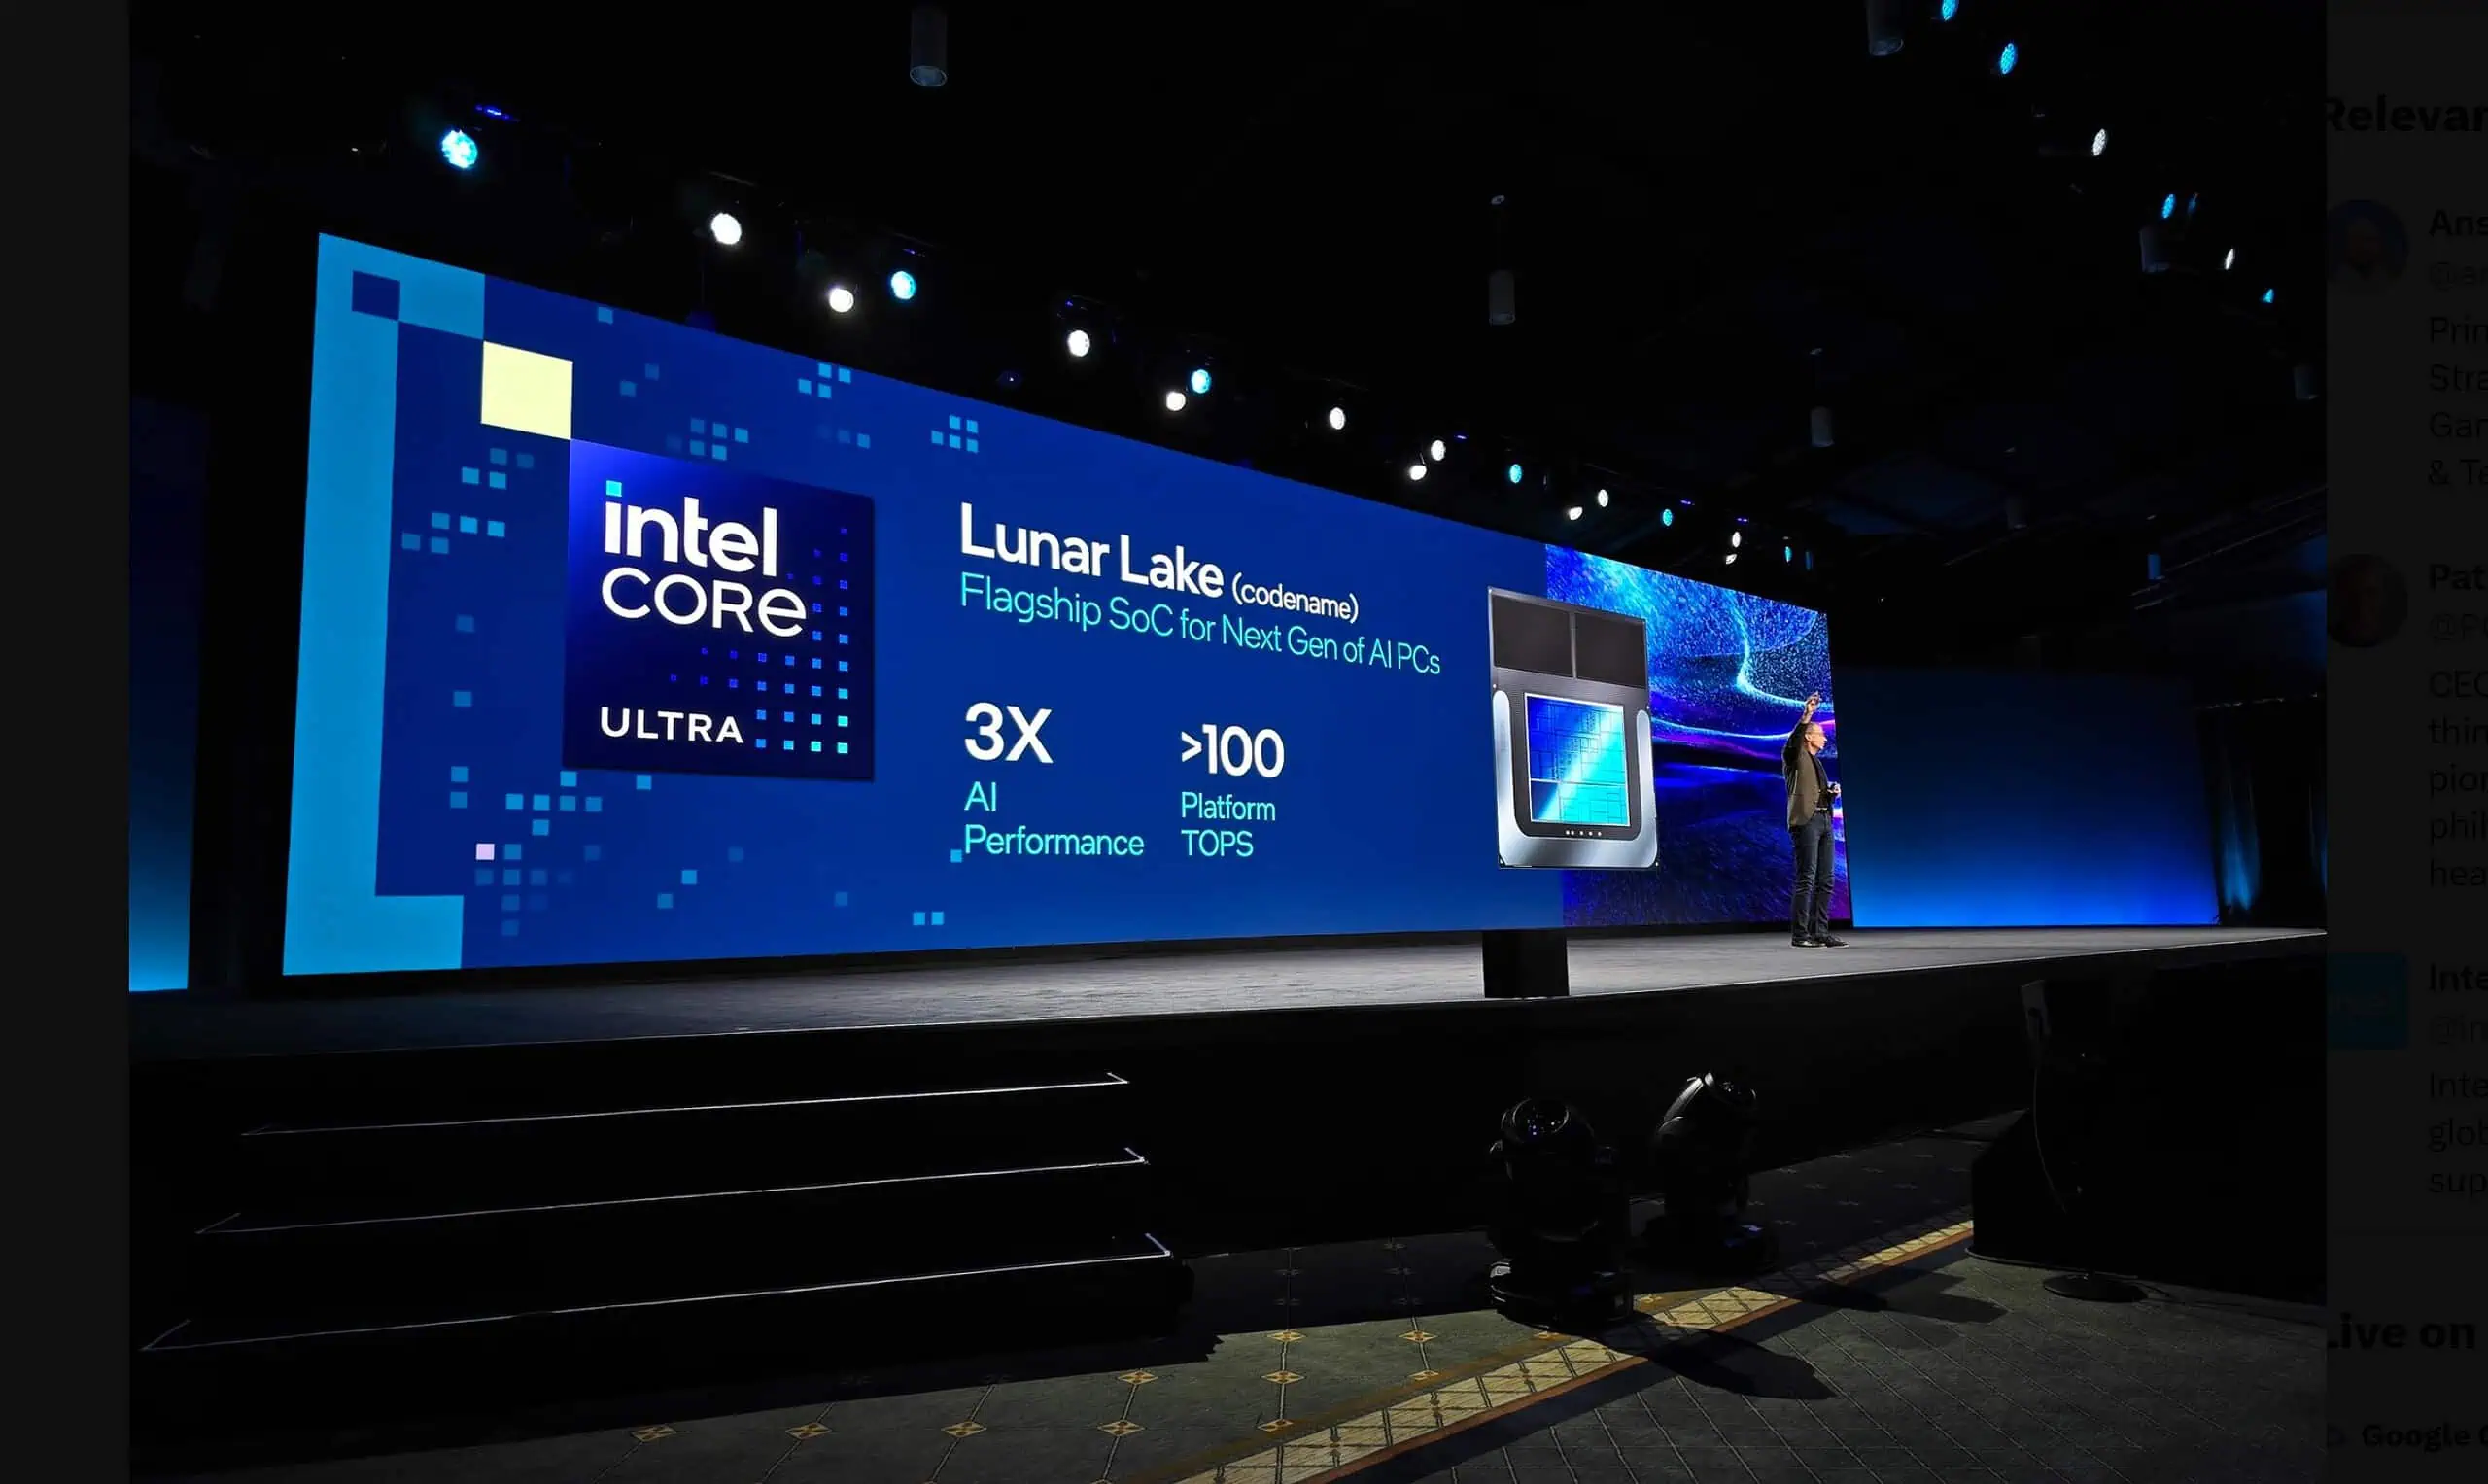 Intel Lunar Lake AI-prestaties 100 TOPS